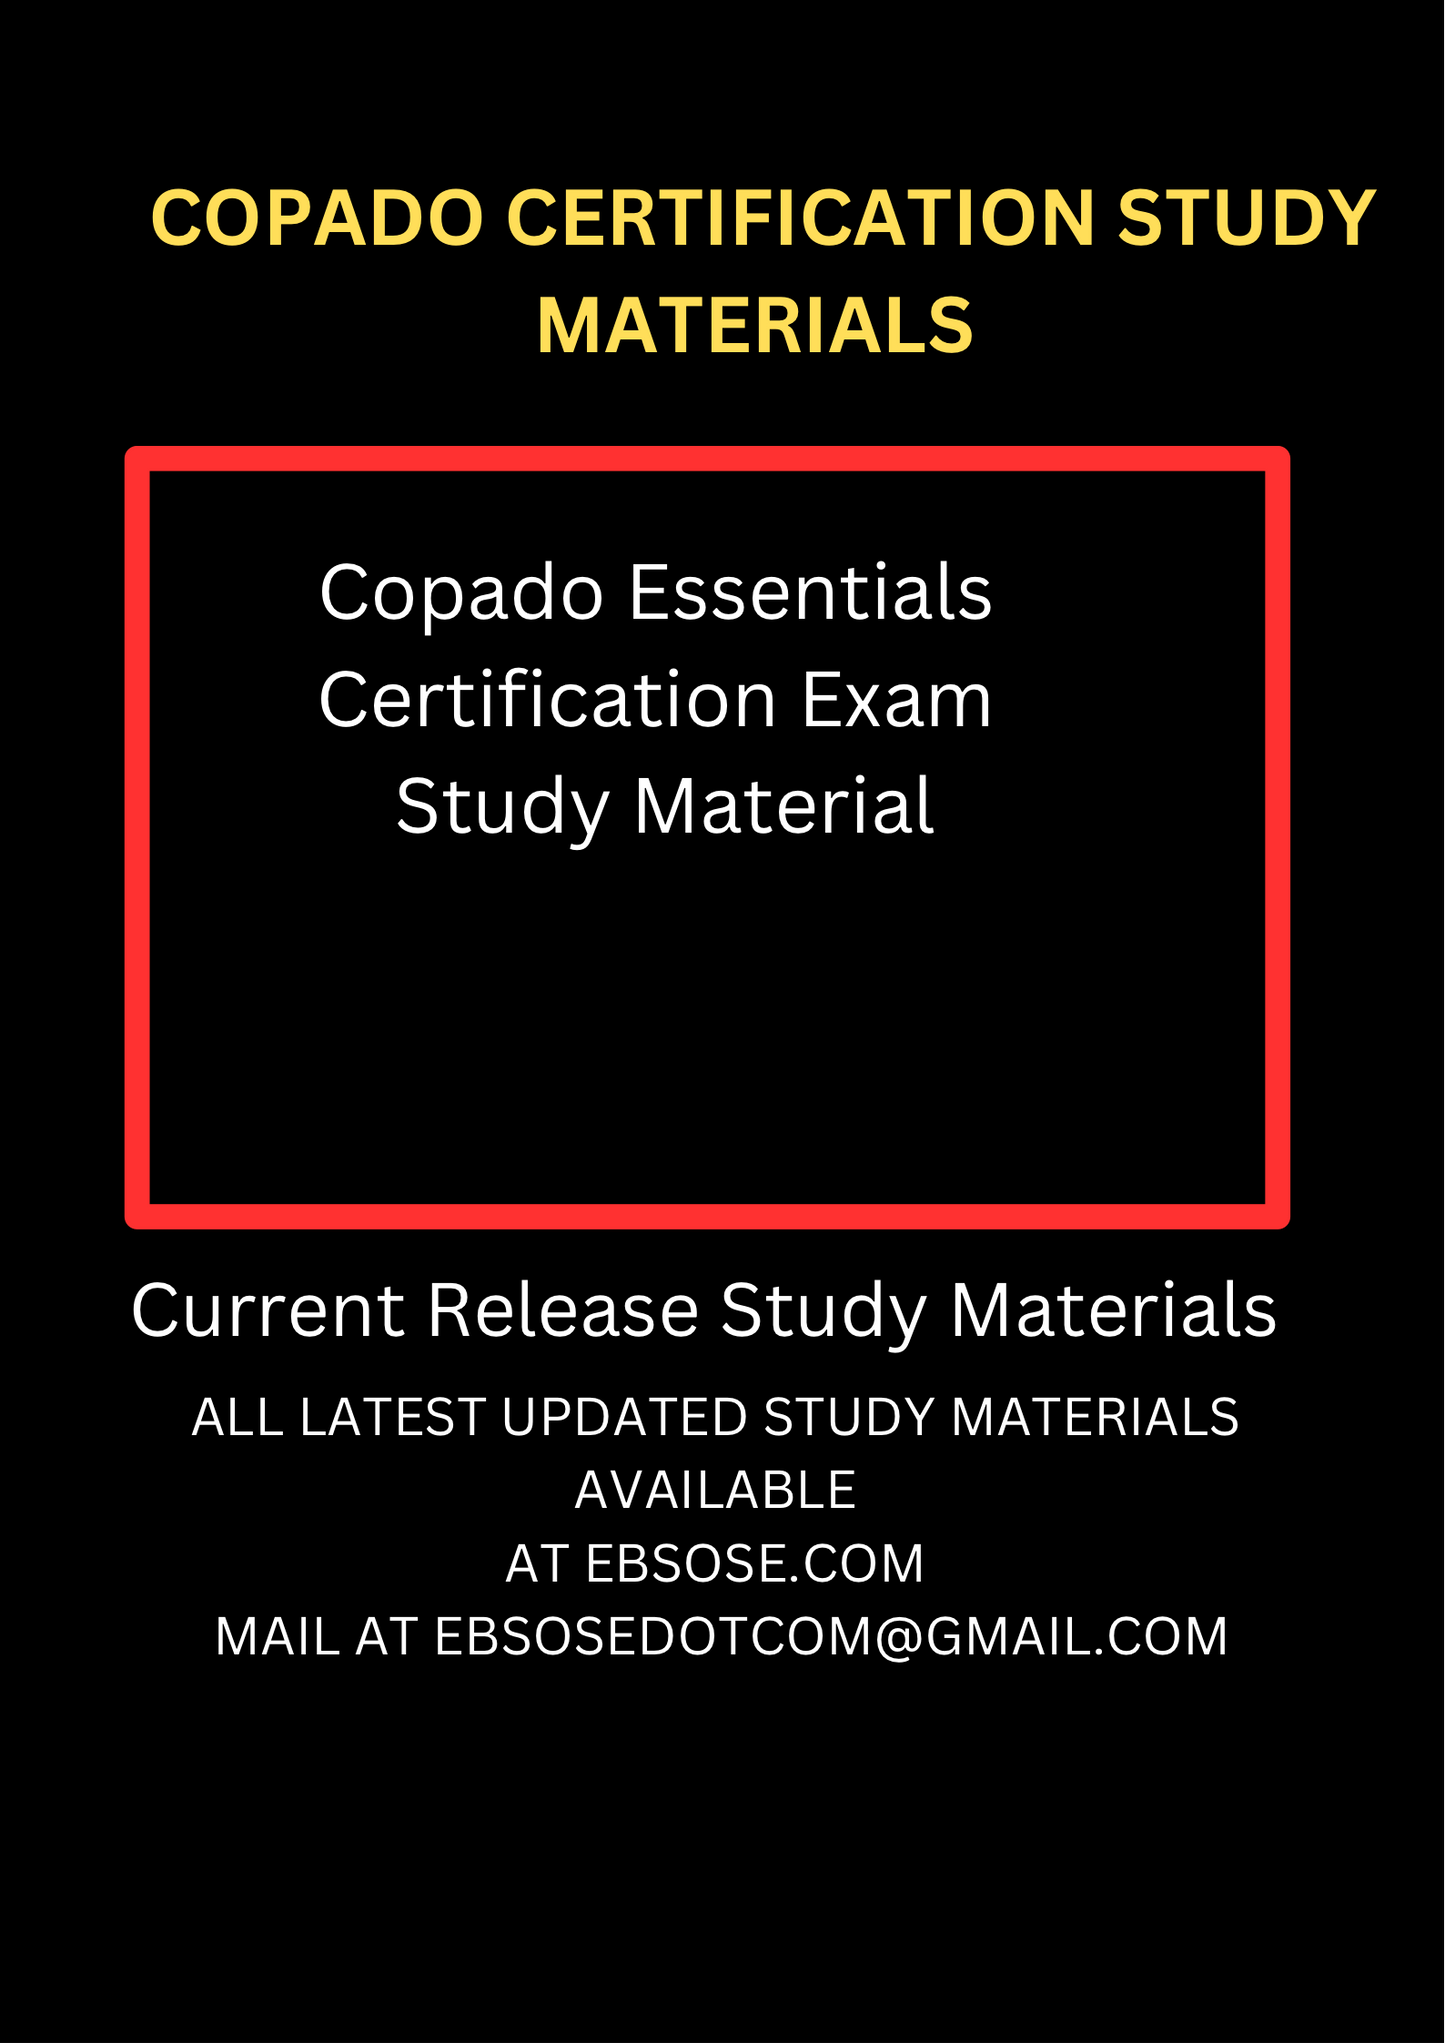 Copado Essentials Certification Exam Study Guide